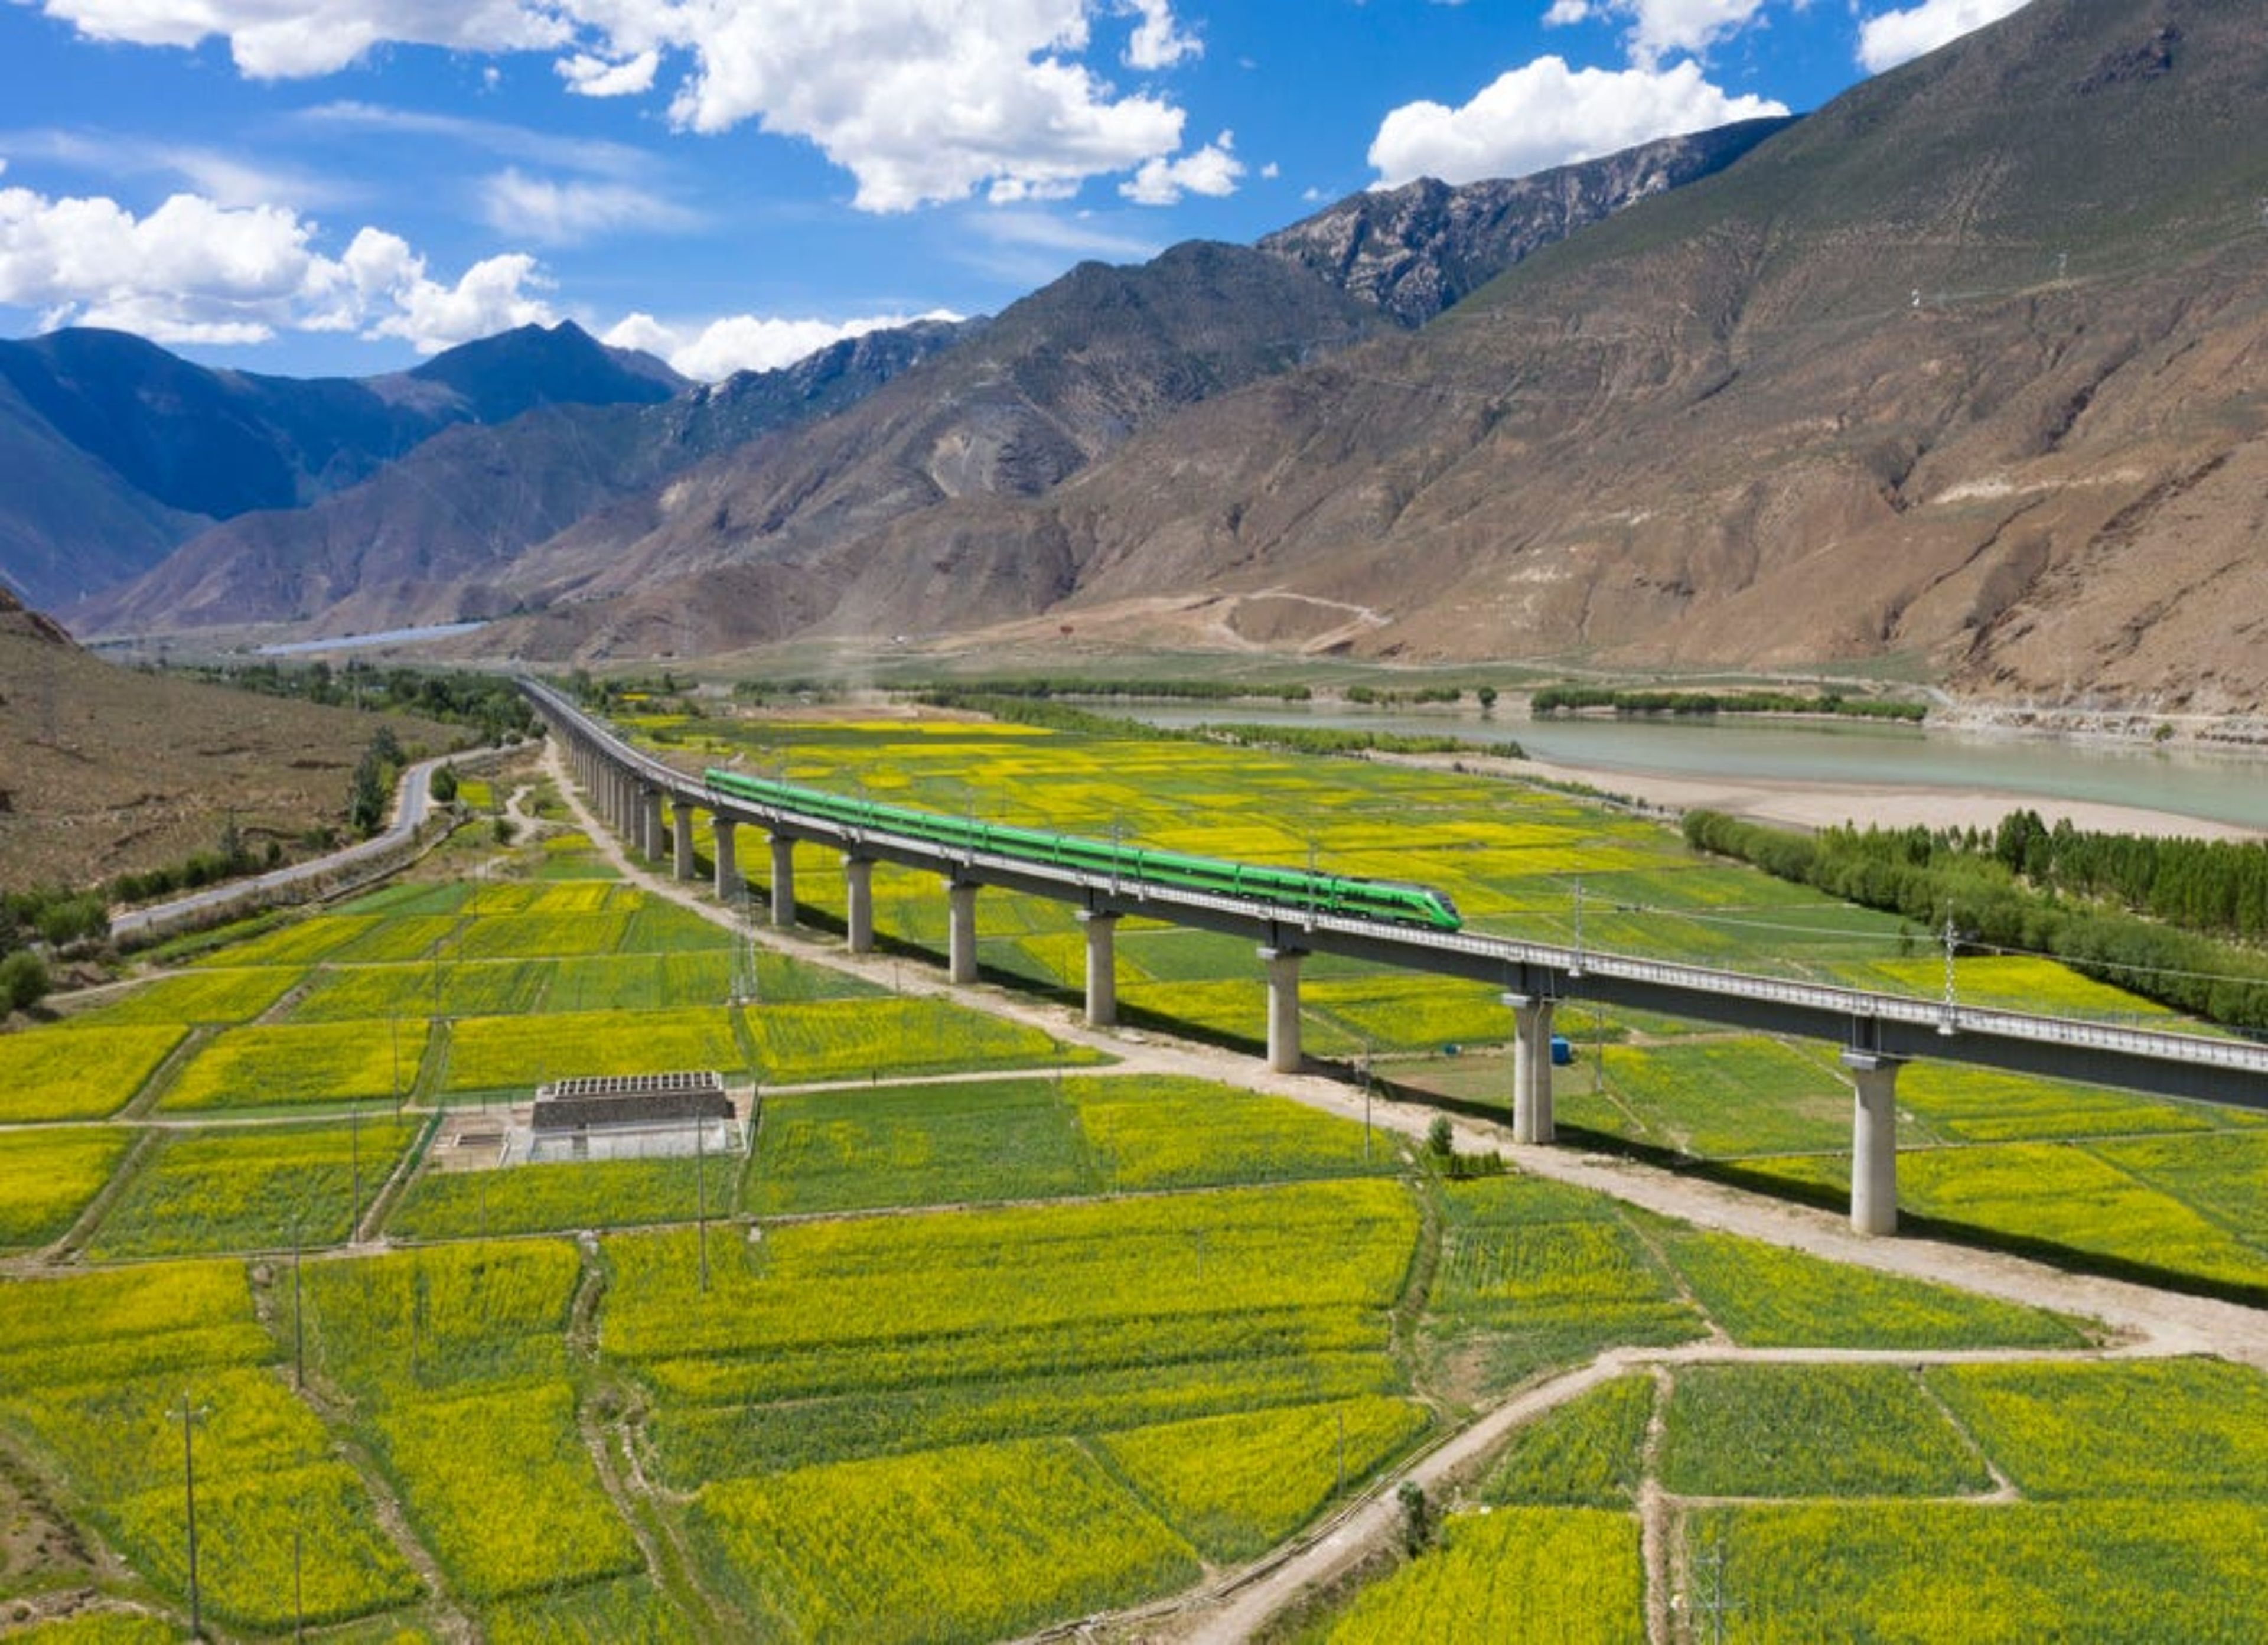 Un tren bala Fuxing recorre el tramo Lhasa-Nyingchi el 24 de junio de 2021 en Shannan, Región Autónoma del Tíbet de China.